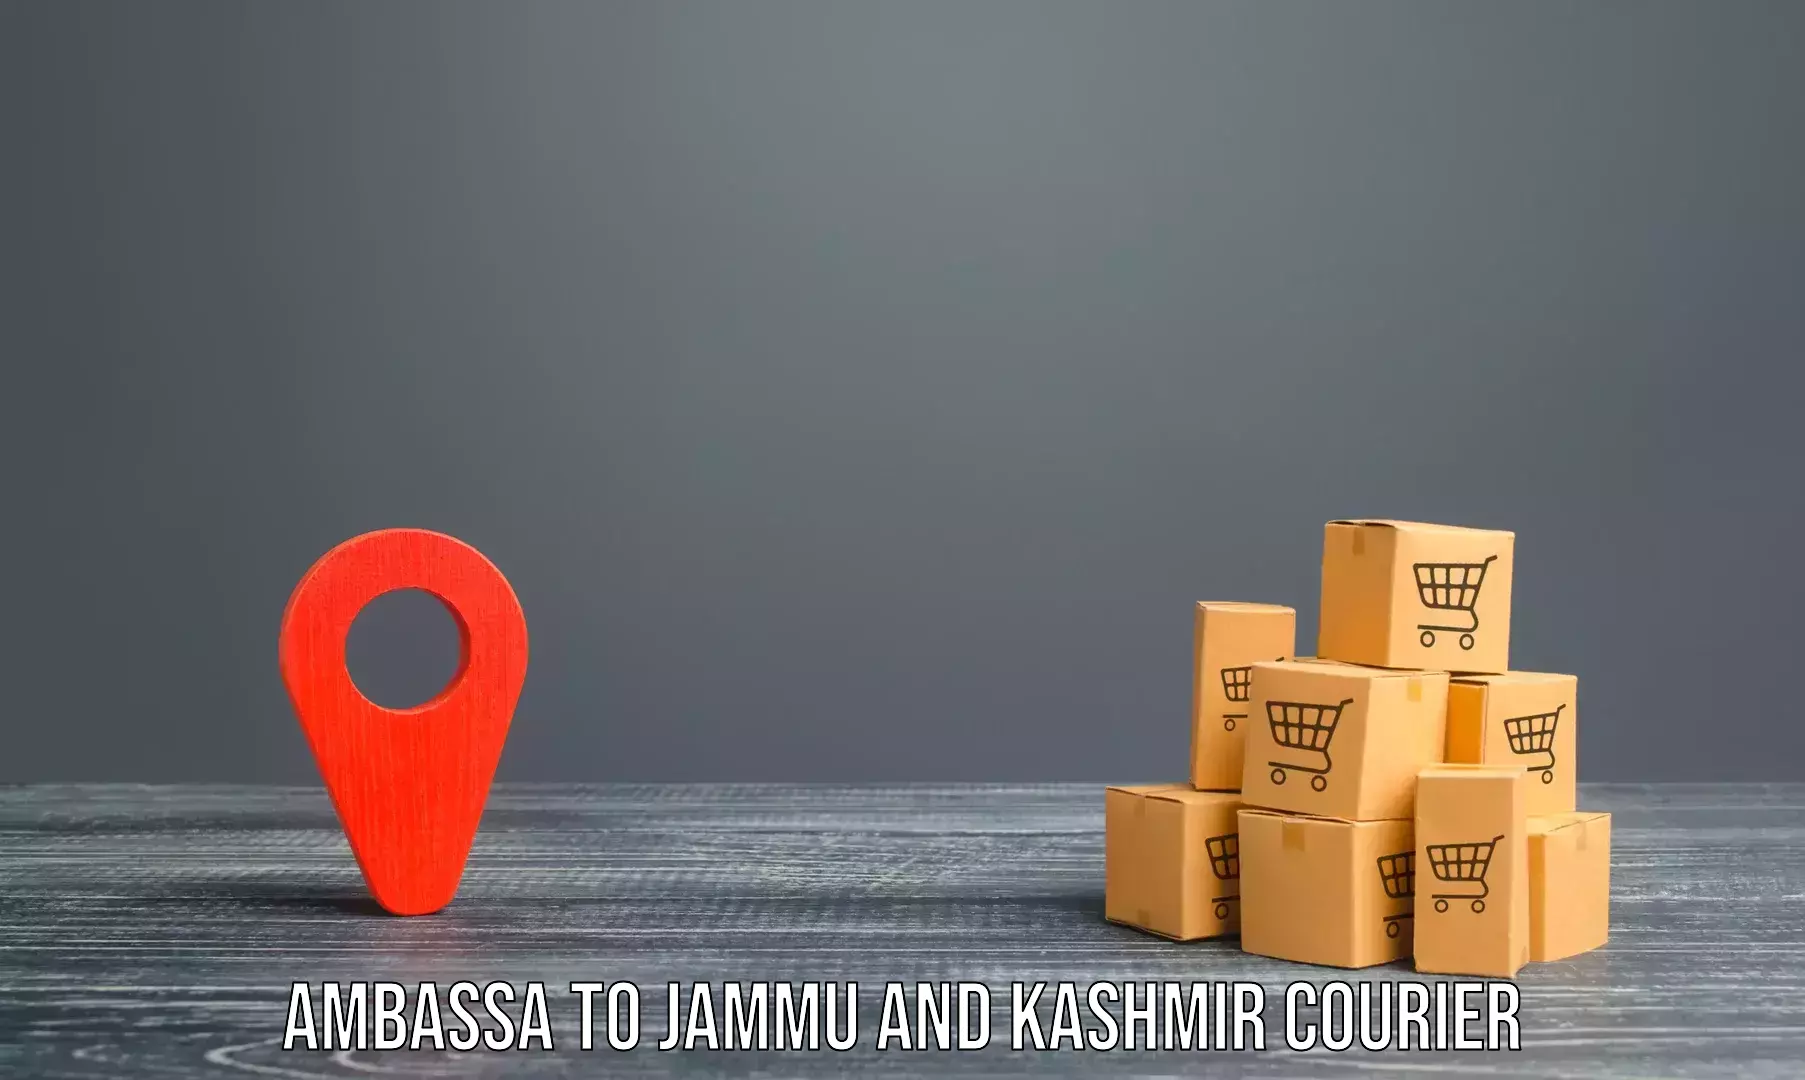 Professional moving assistance Ambassa to Jammu